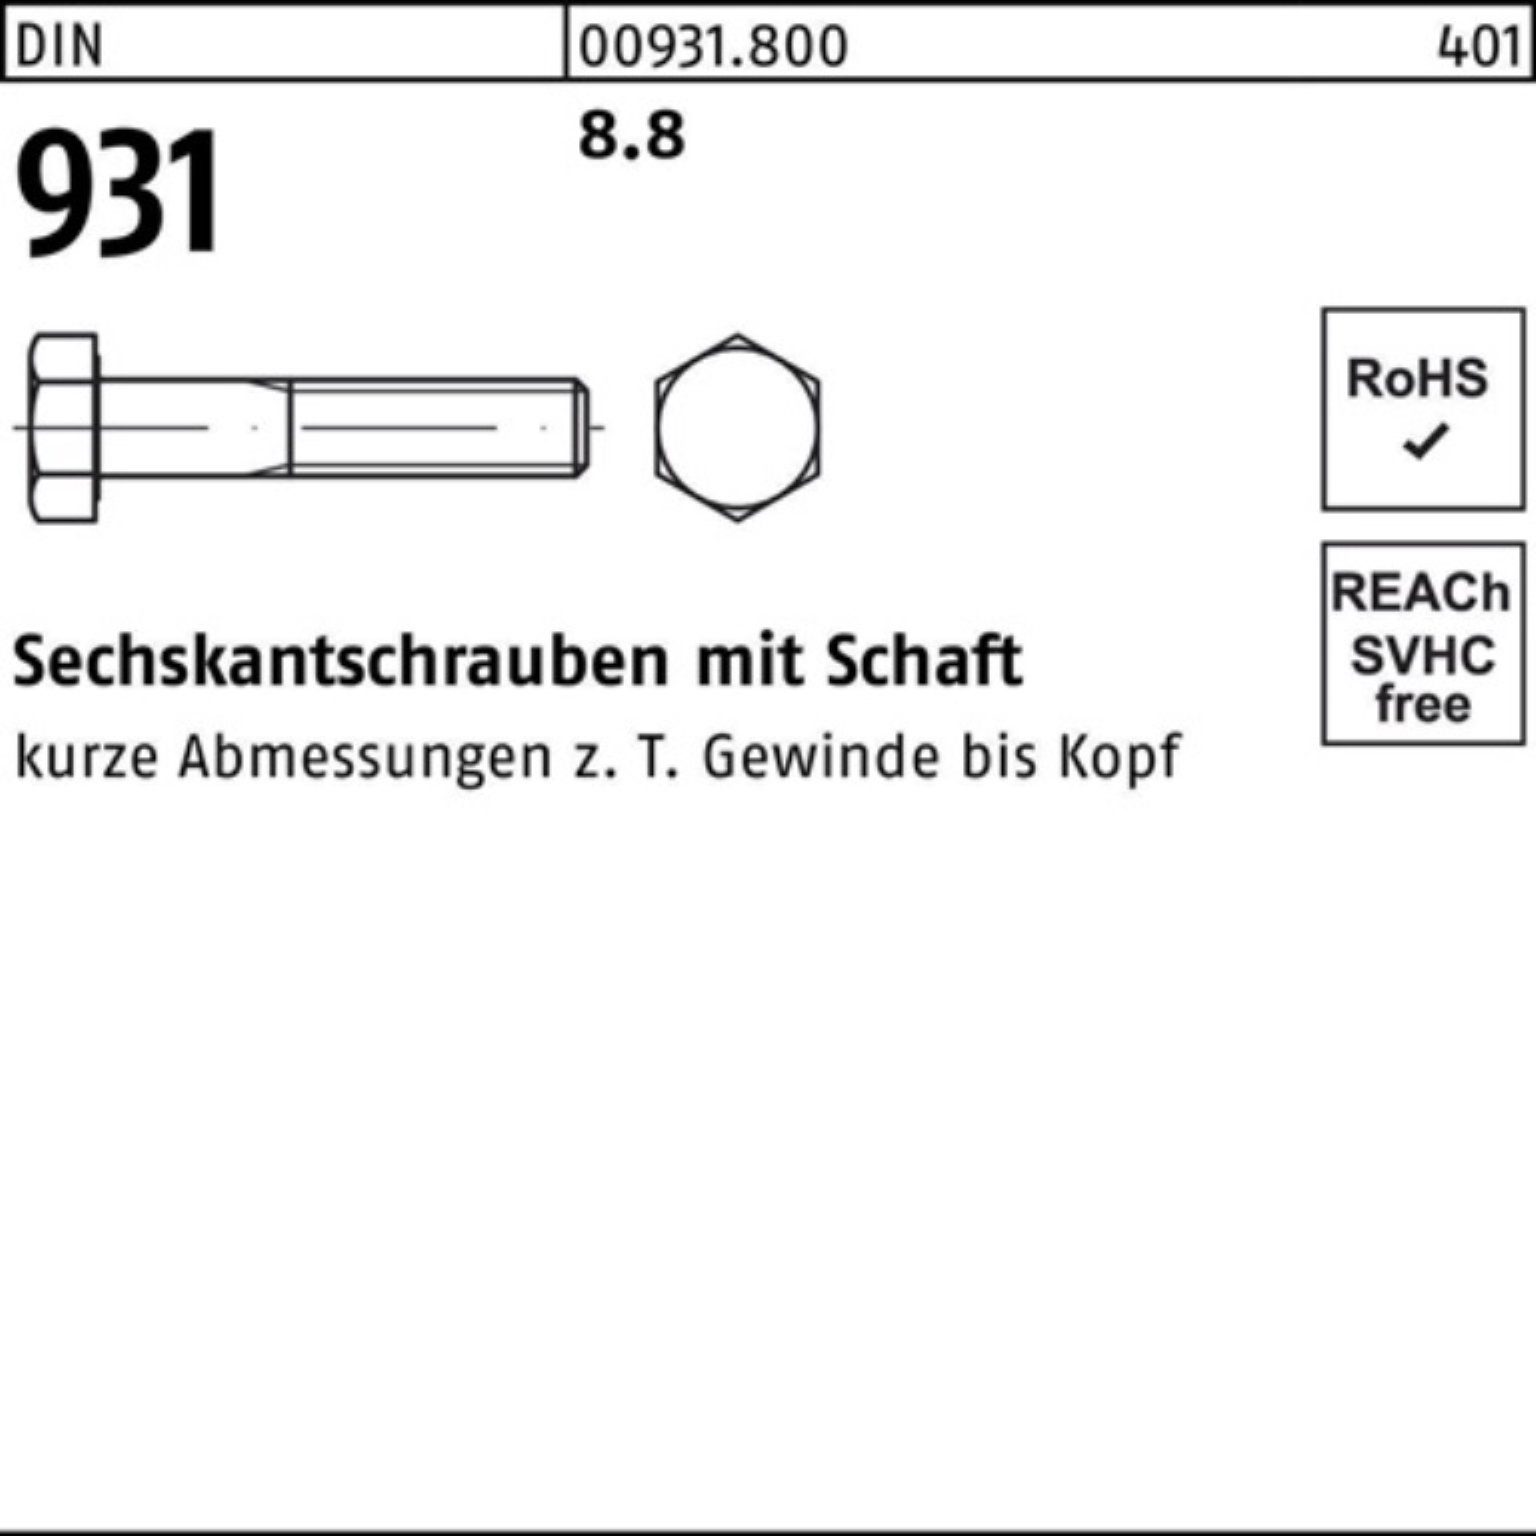 Sechskantschraube Reyher Schaft Pack 8.8 931 50 DIN Sechskantschraube M14x 130 100er Stück DIN